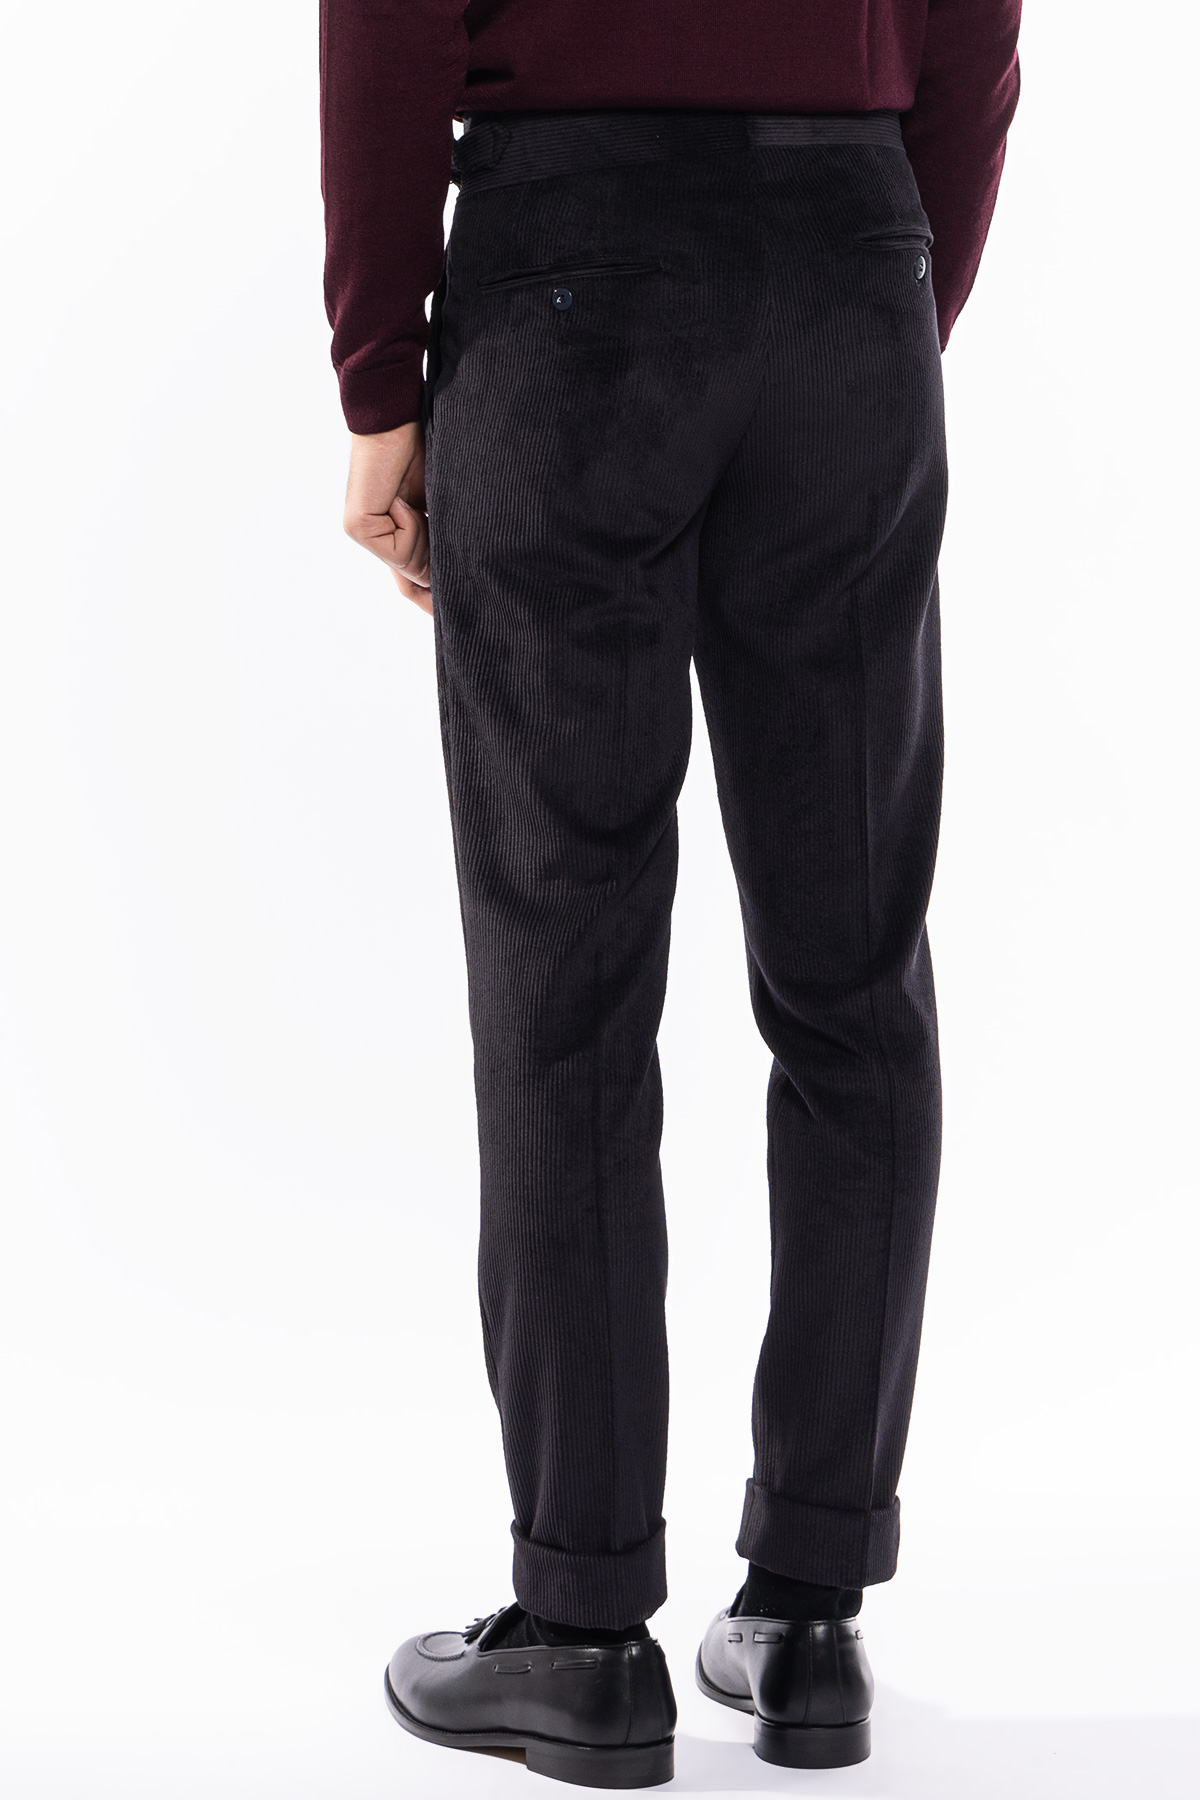 Pantalone uomo nero vita alta biforcato doppia pinces in velluto a costine strette